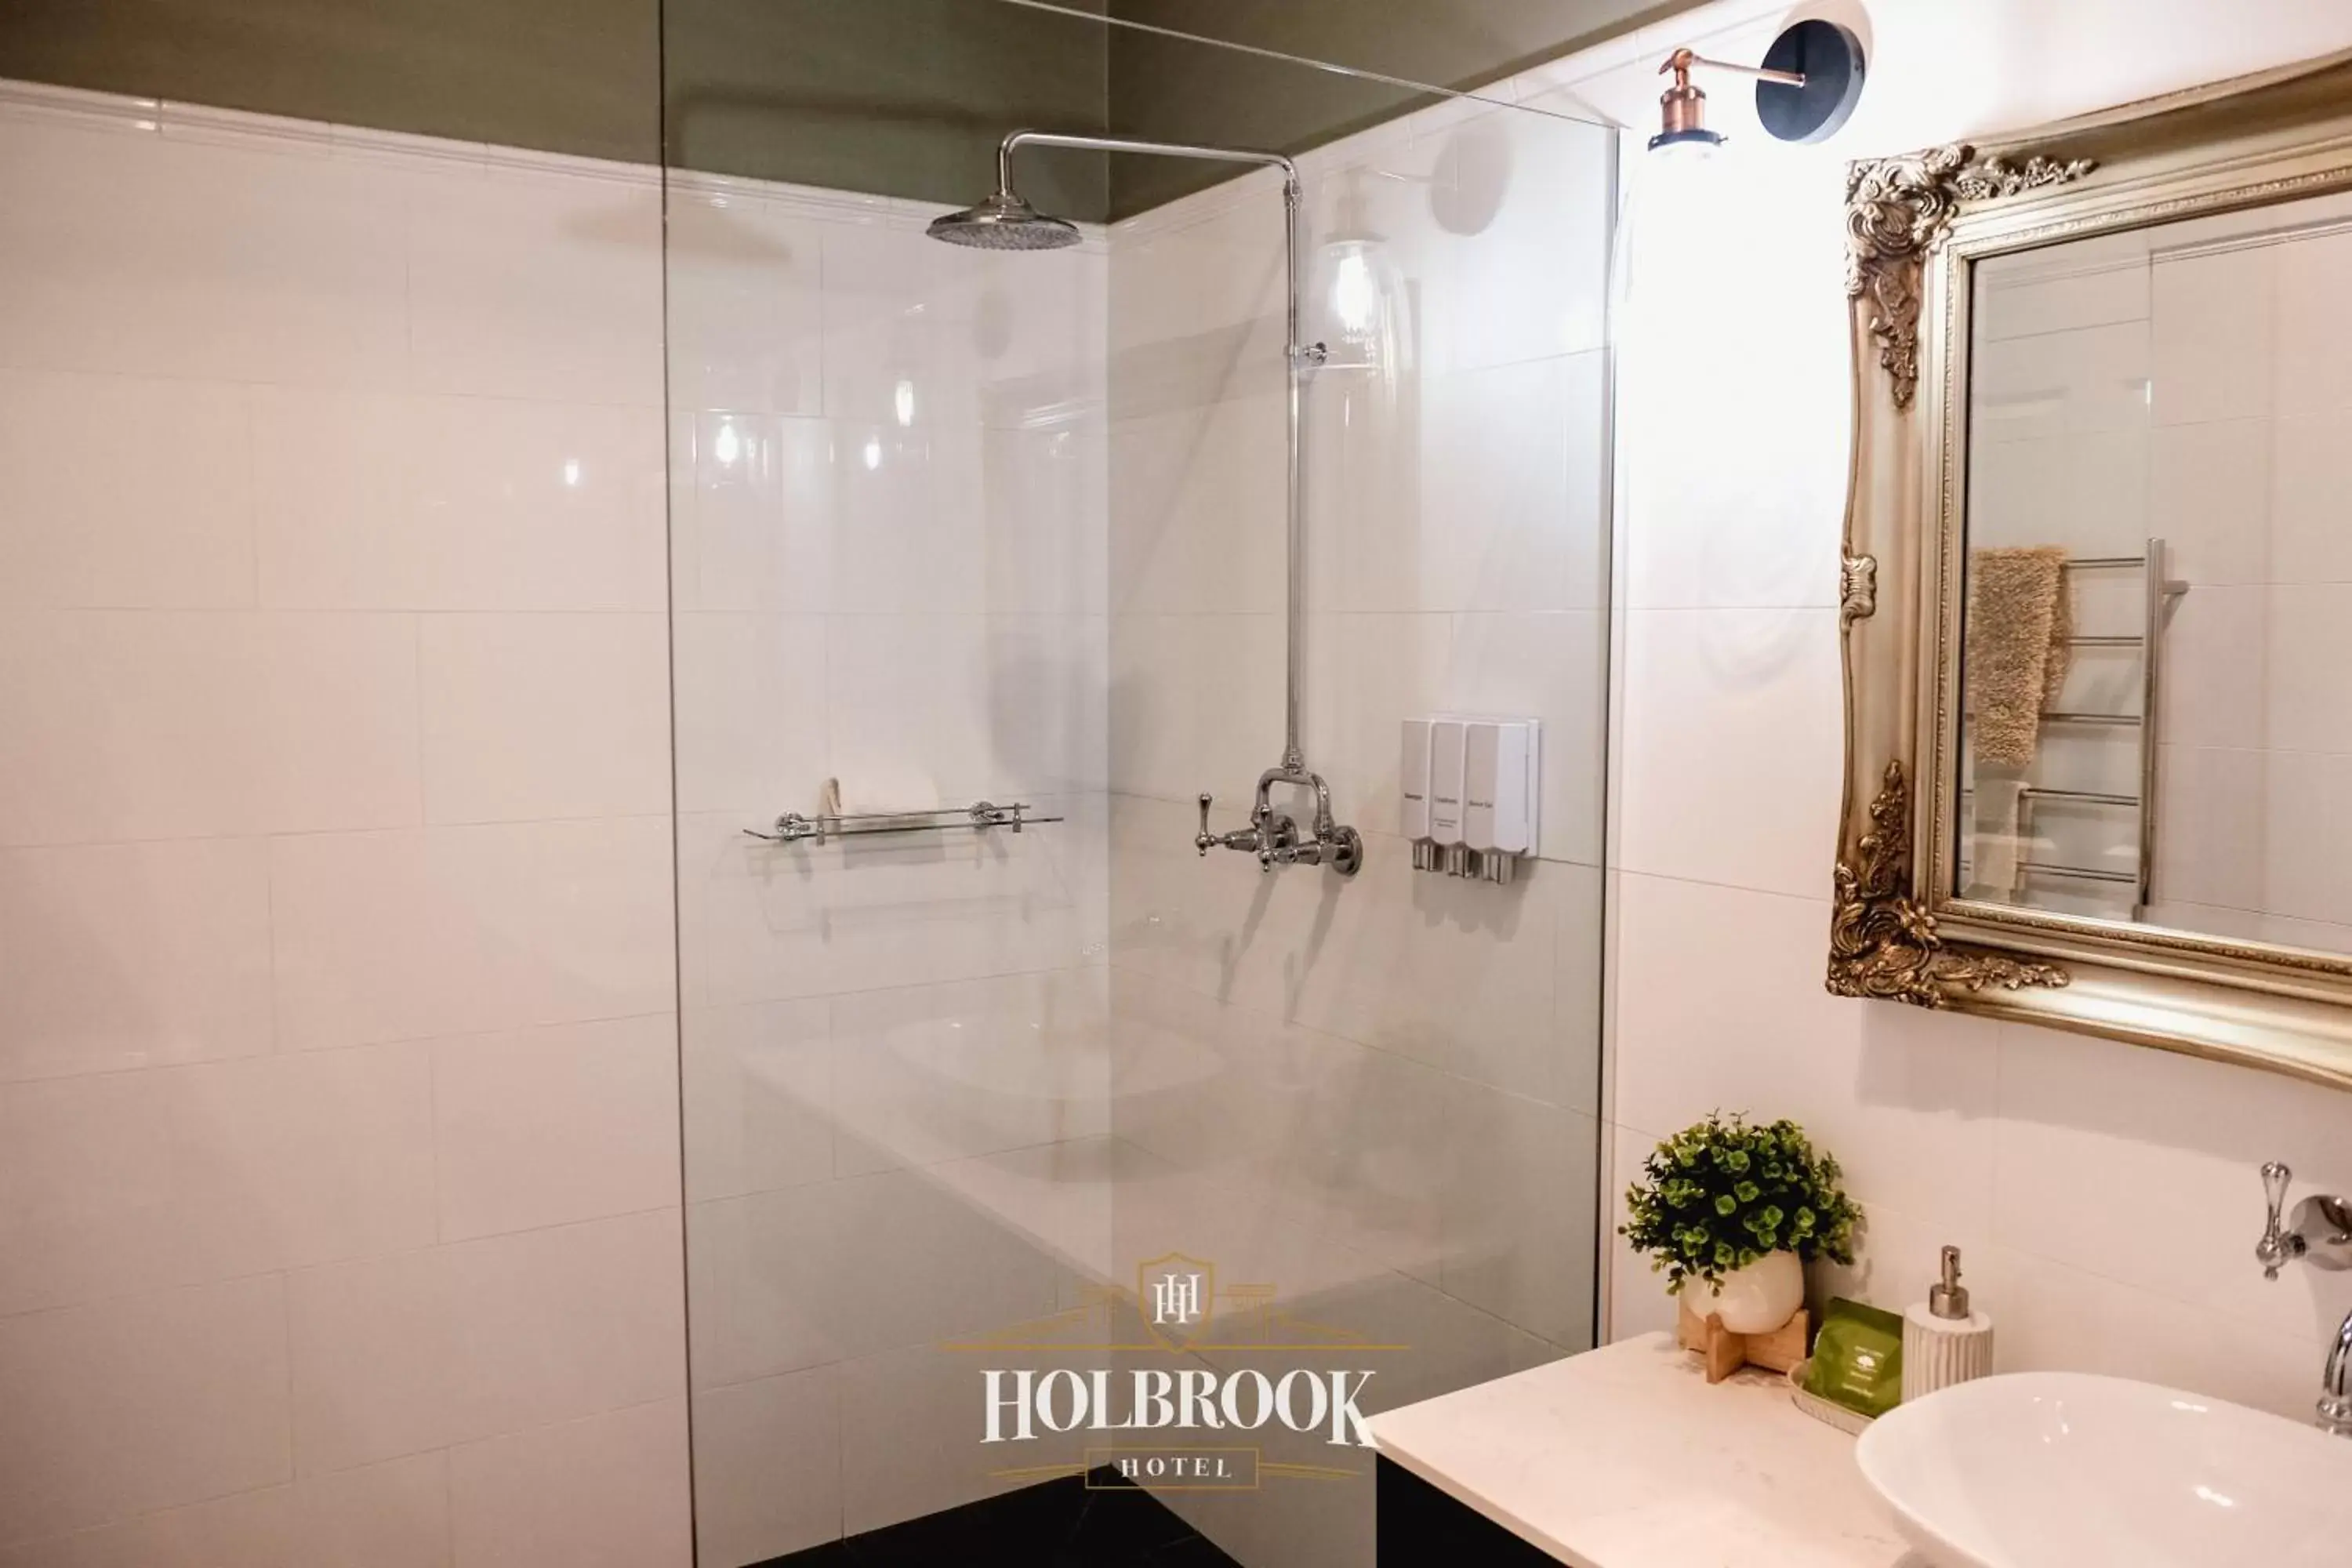 Shower, Bathroom in Holbrook Hotel